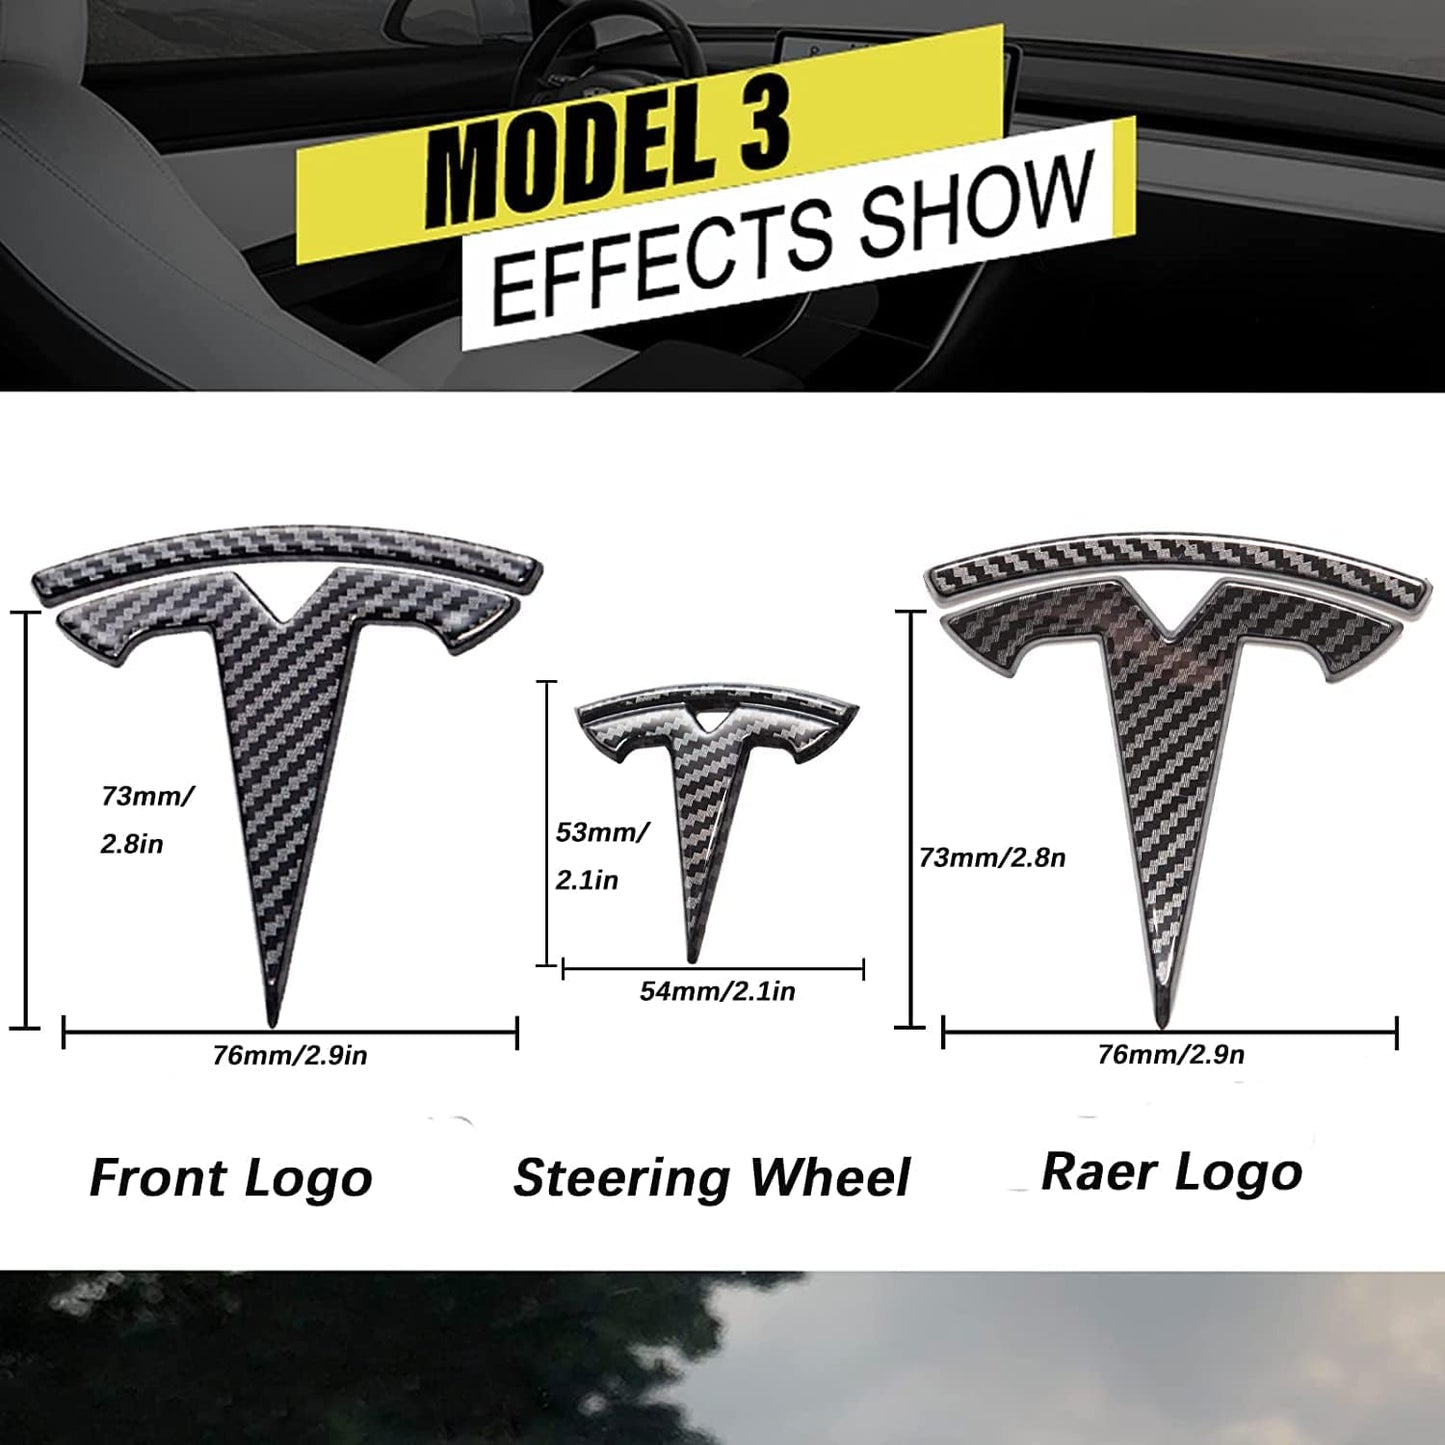 Tesla Model 3 Logo Cover overlay Emblem Badge Front Trunk Rear Trunk Steering Wheel